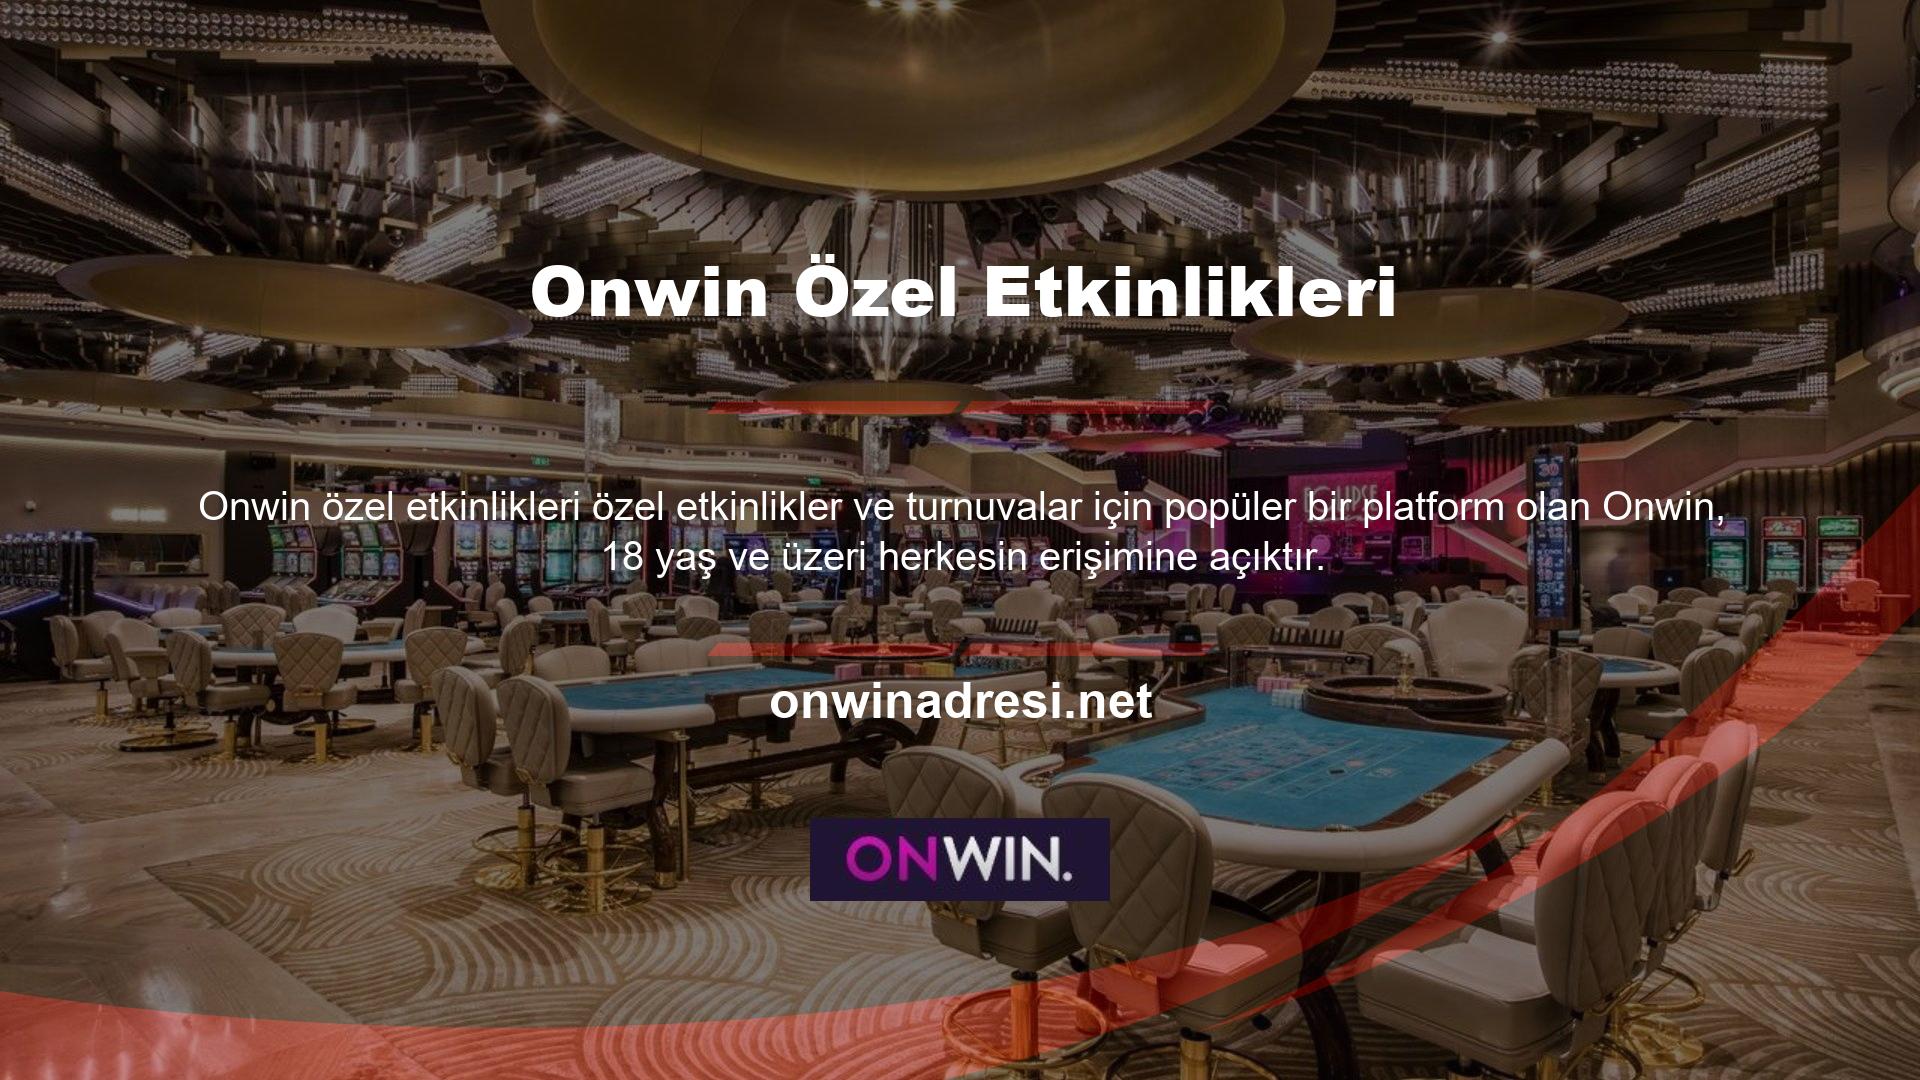 Onwin, slot makinesi meraklıları arasında popüler olan piyango oyunları ve sanal casinosuyla ünlüdür